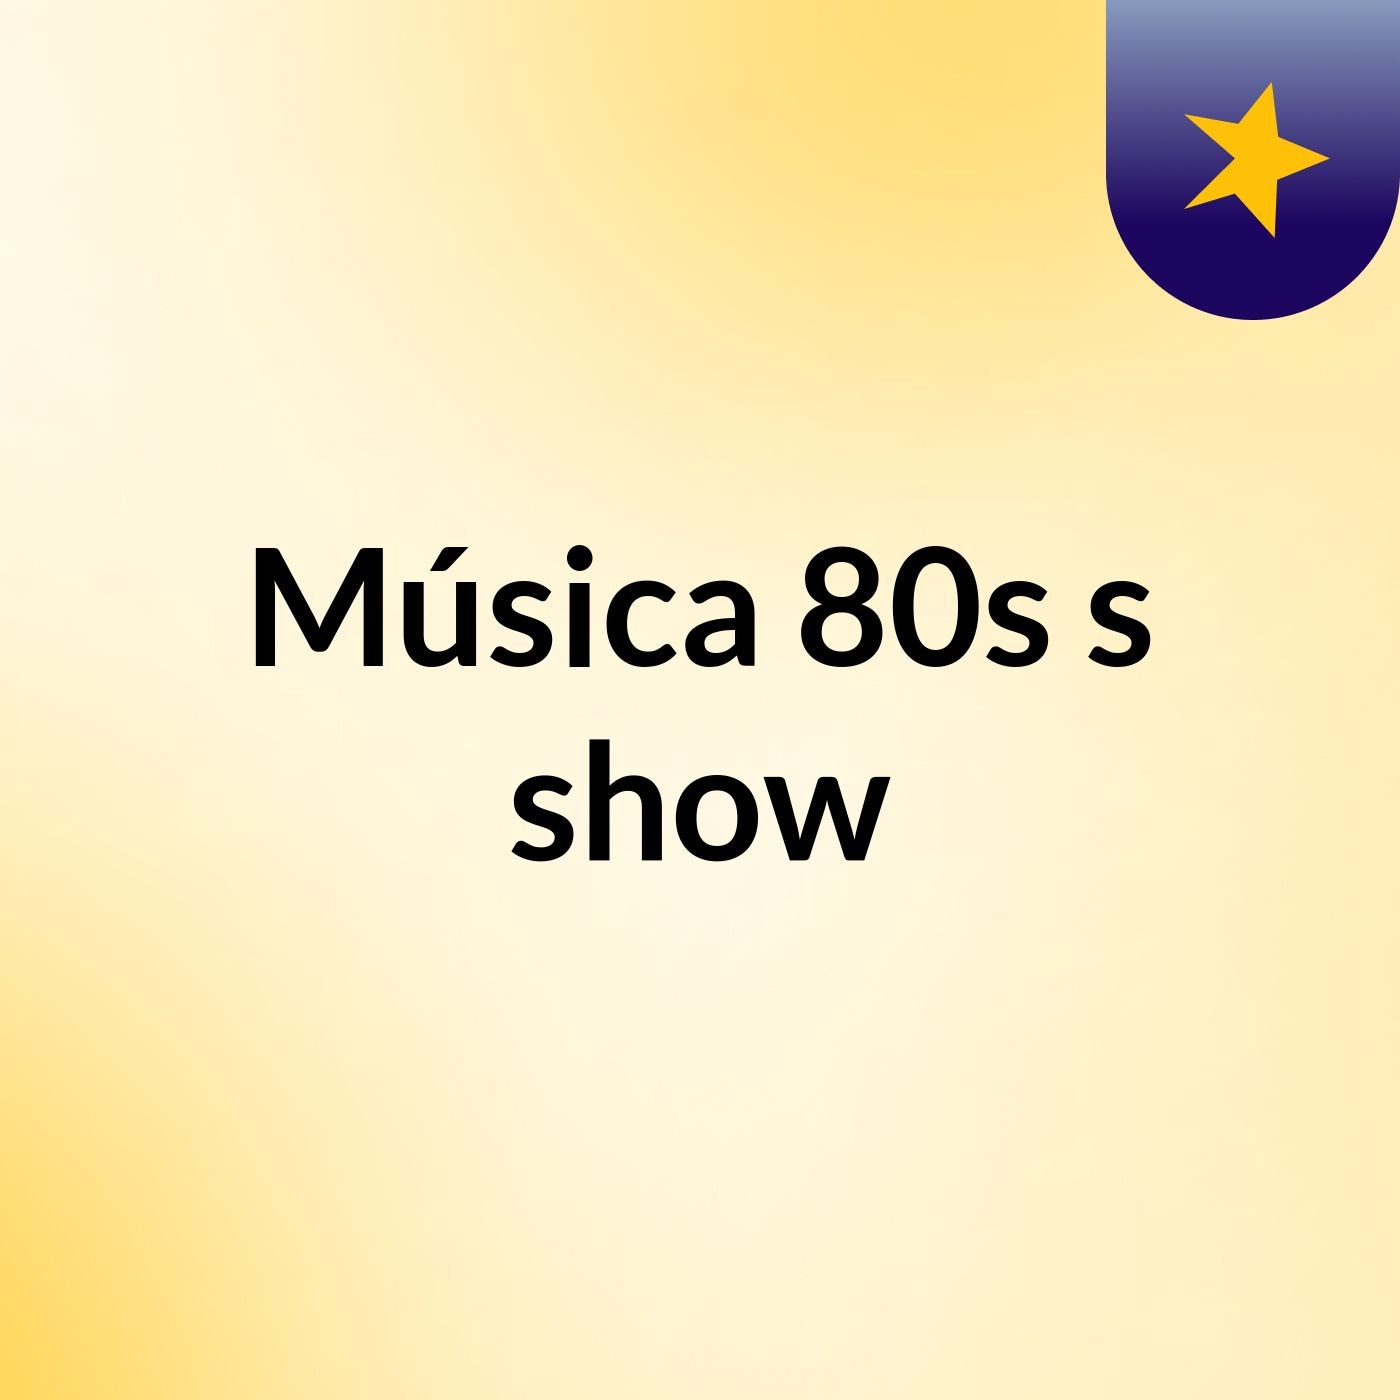 Música 80s's show